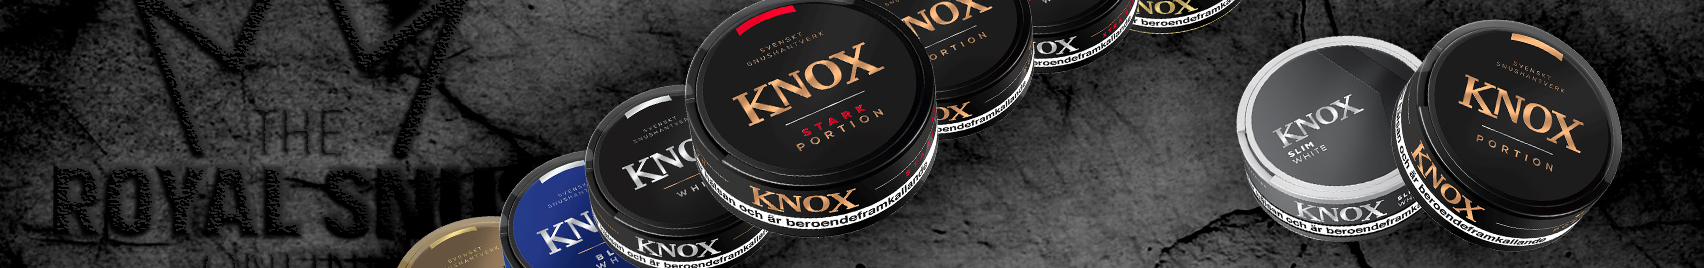 Buy KNOX snus online